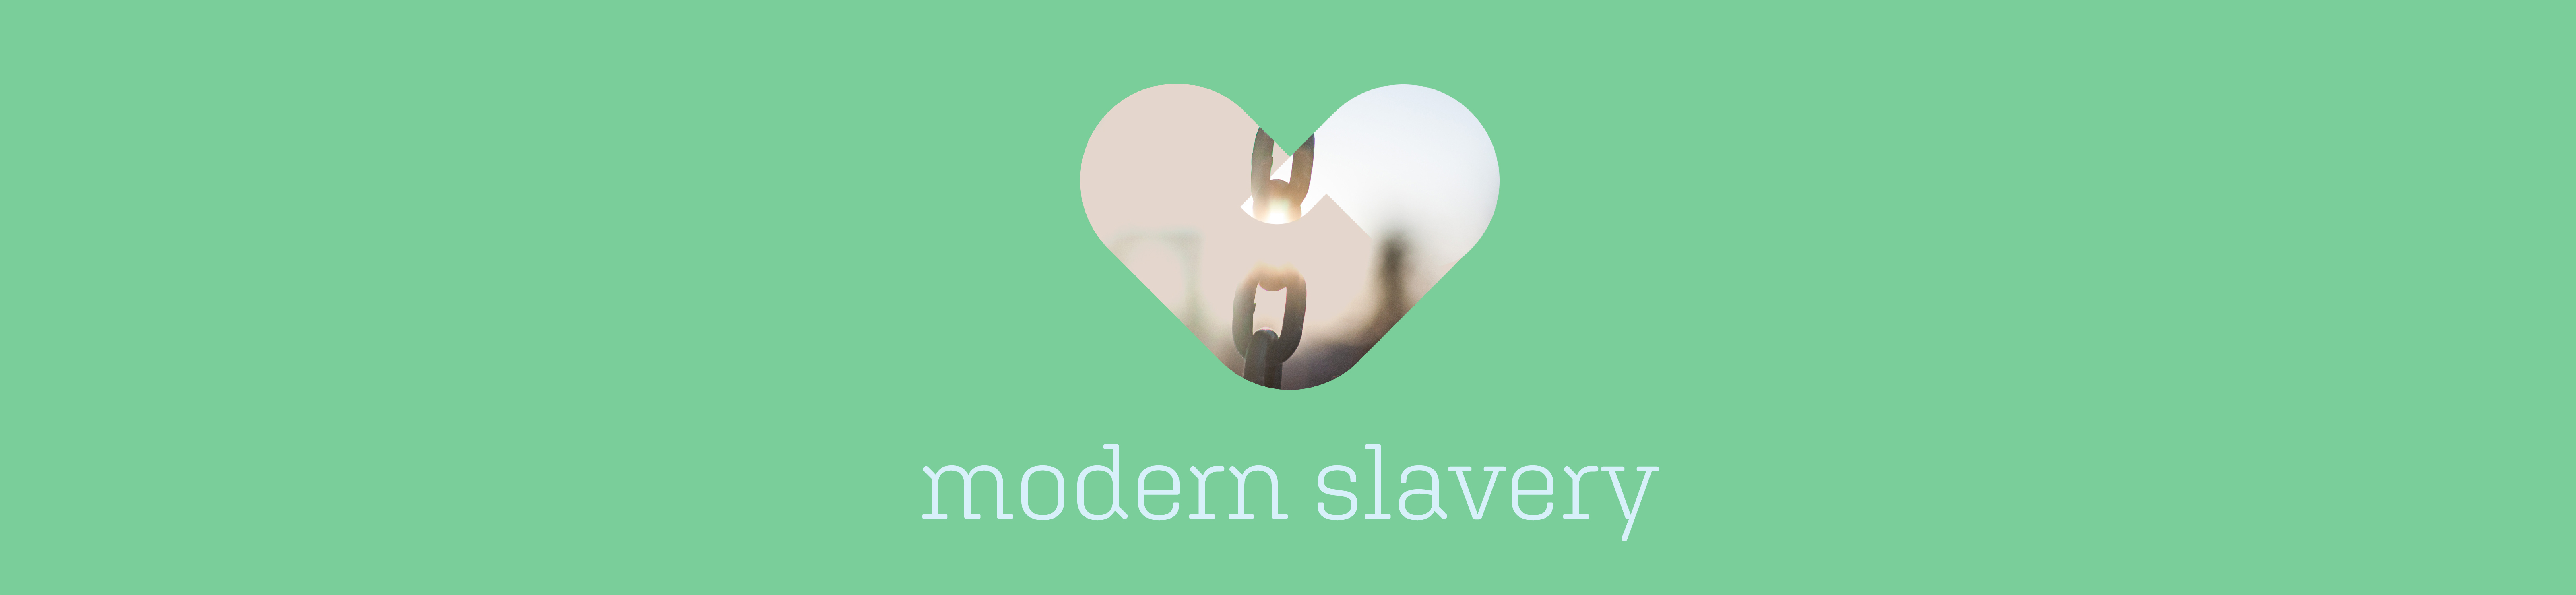 Kingdom Passions - Modern Slav